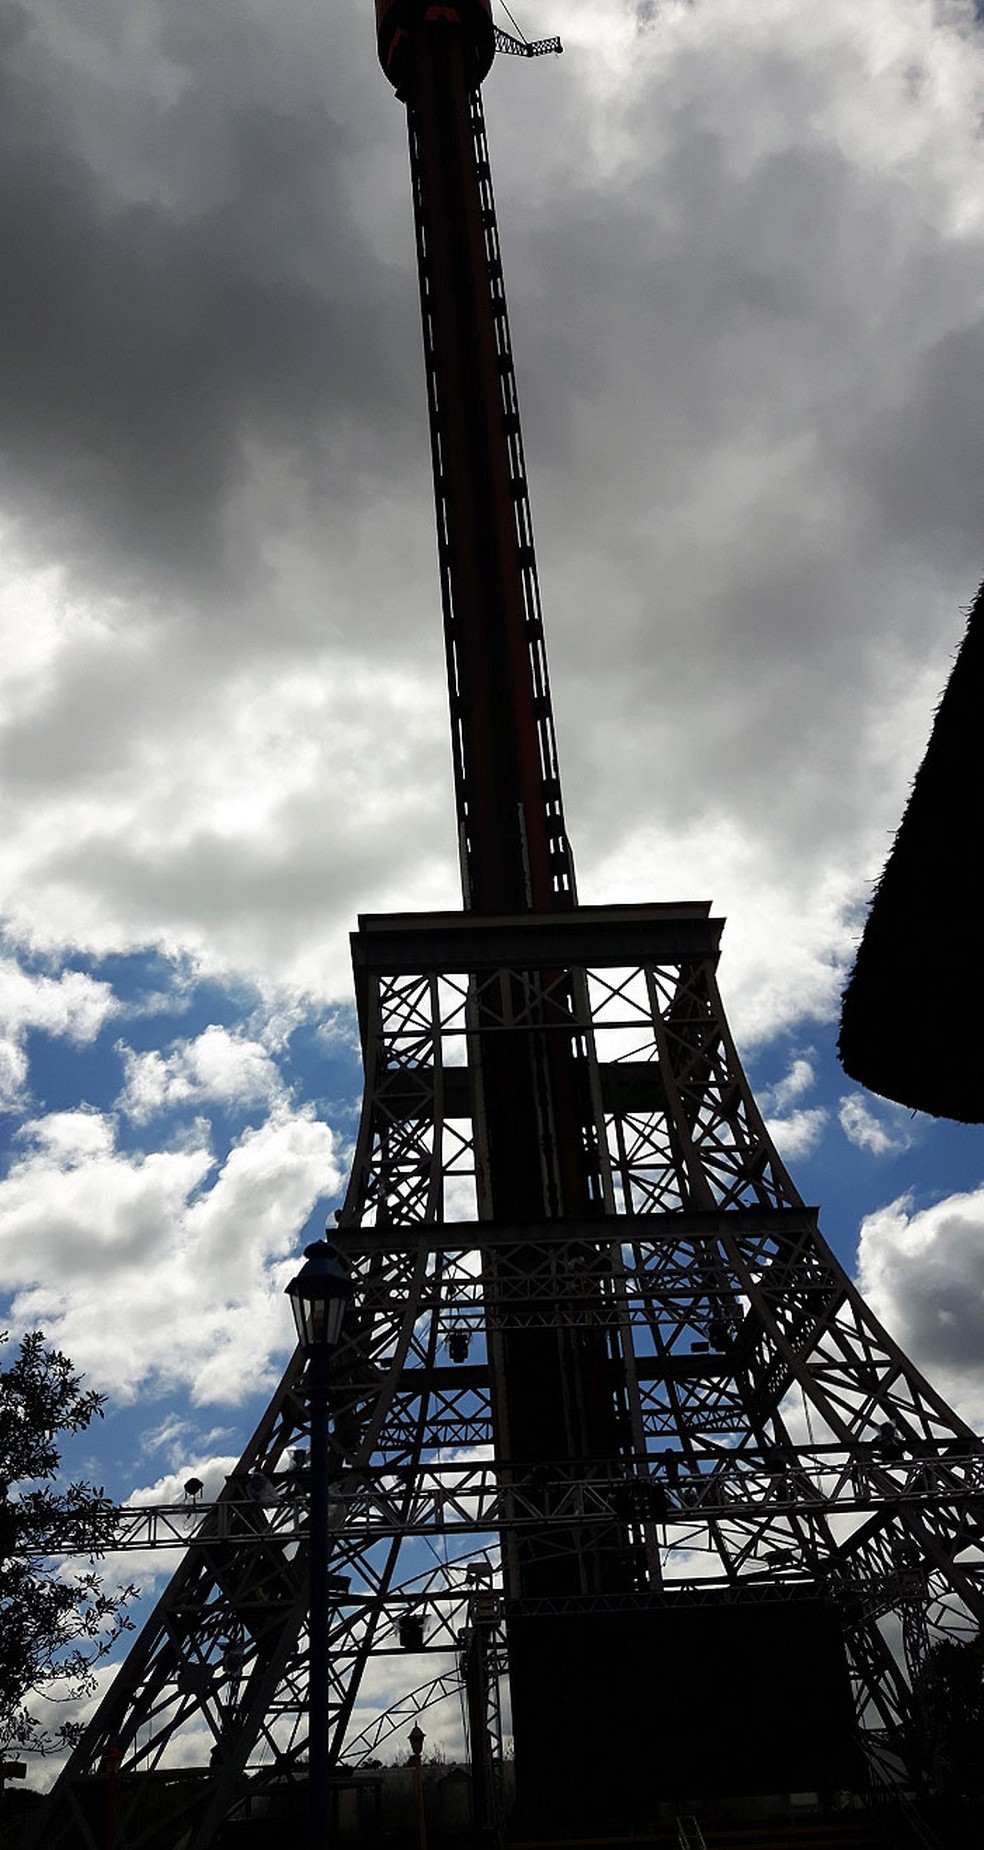 Hopi Hari muda previsão de reabertura da torre de queda livre para 2022